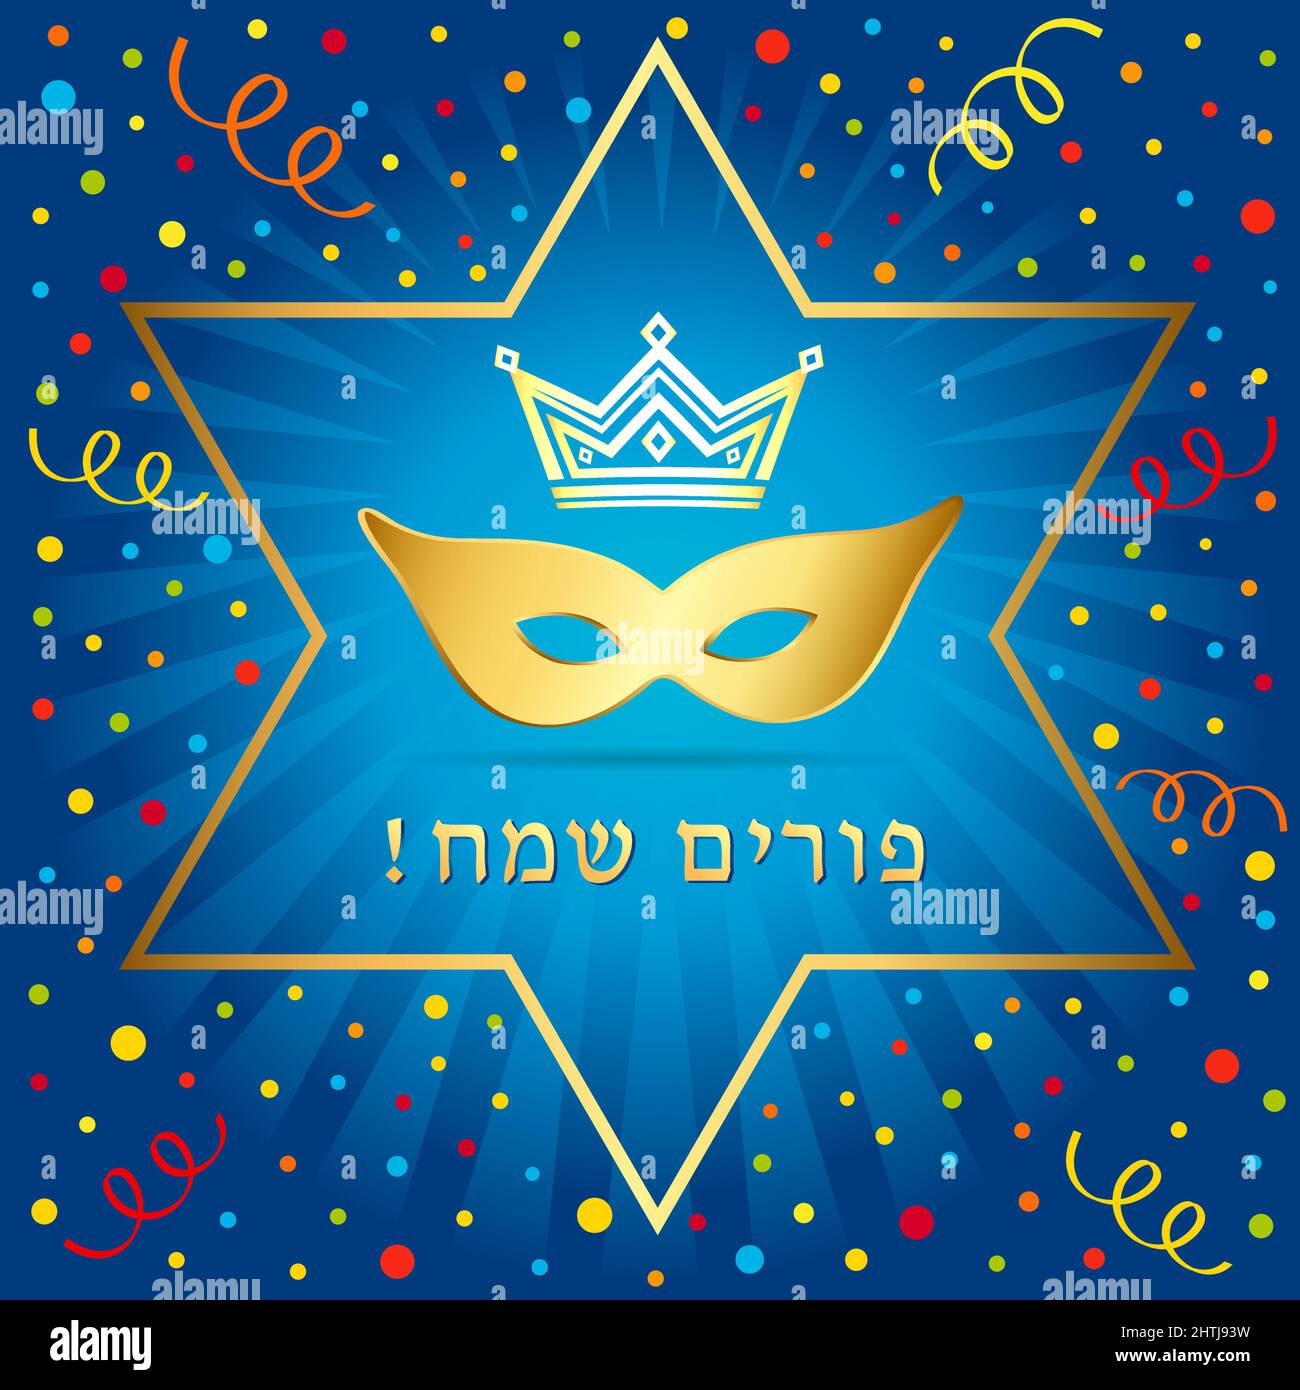 Maschera Happy purim e confetti dorati. Modello grafico astratto isolato. Happy Purim script ebraico, paillettes d'oro e maschera di carnevale lucido. Illustrazione Vettoriale